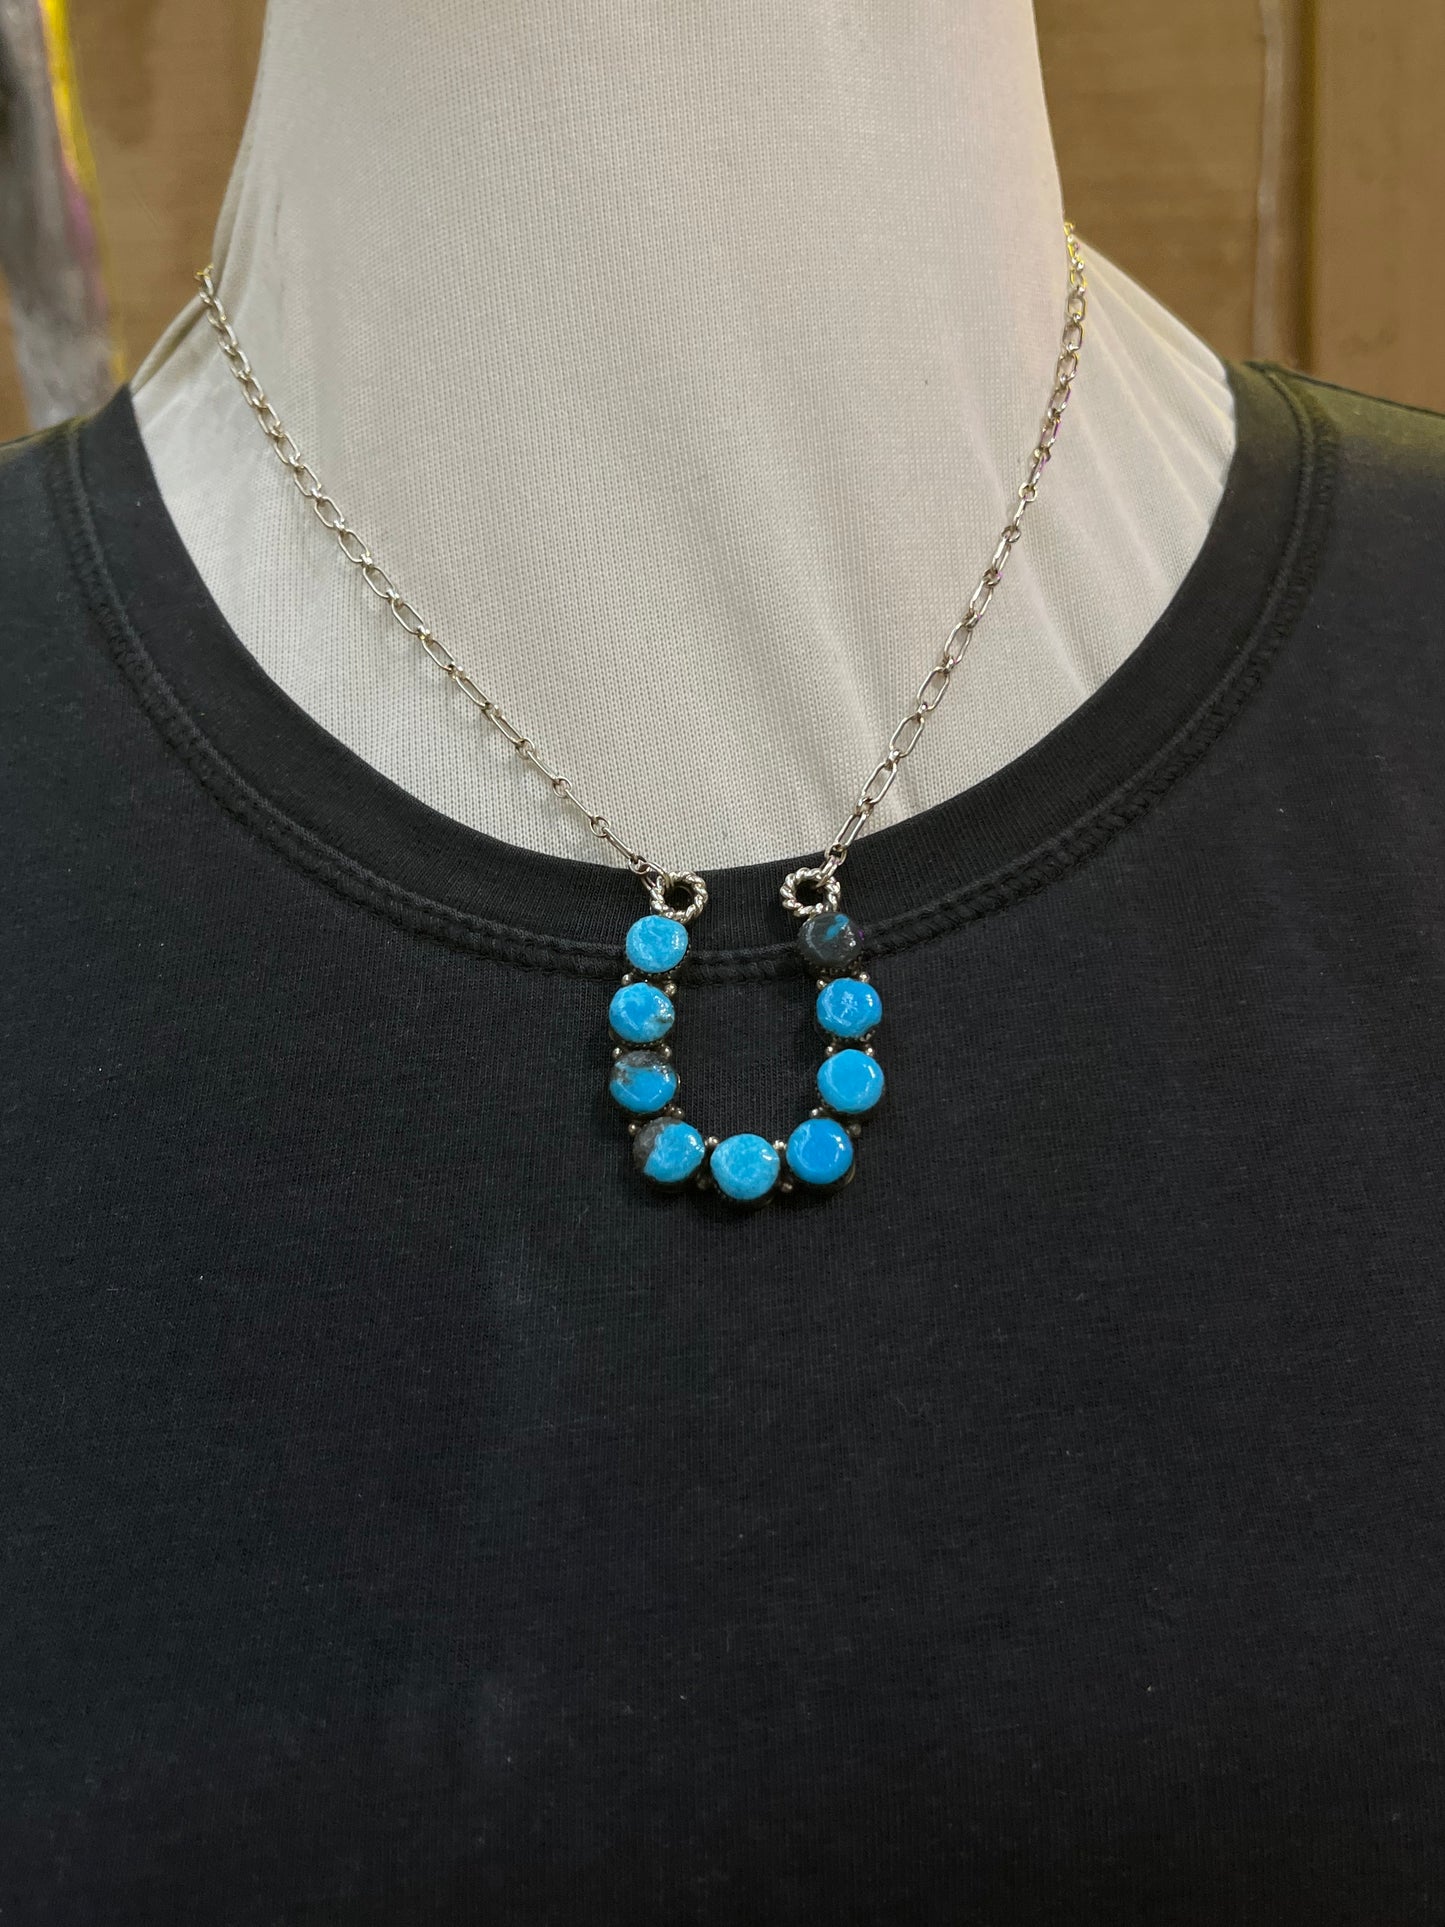 Horseshoe Necklace with Turquoise Stones